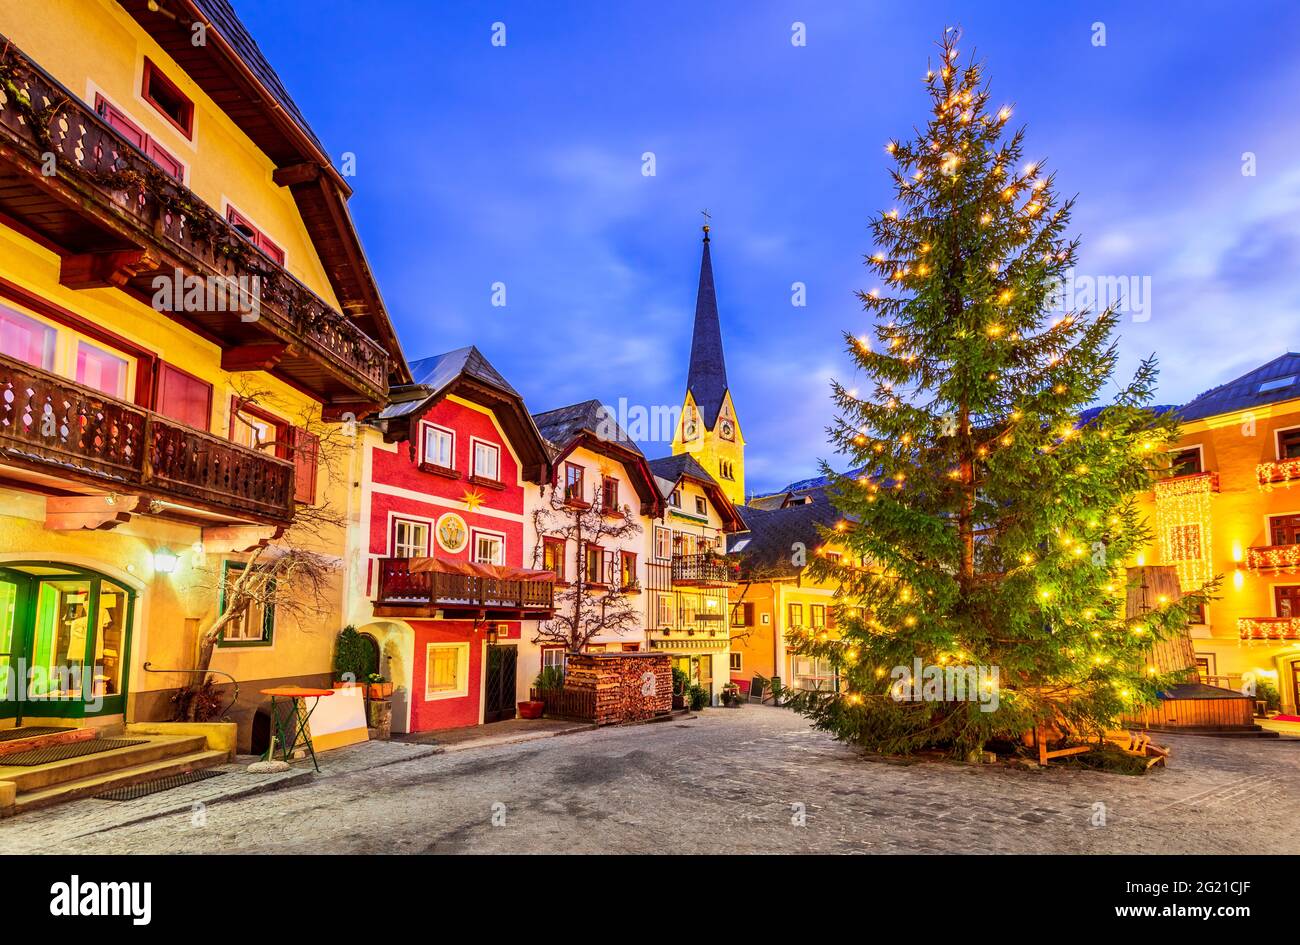 Hallstatt, Österreich - Weihnachtsbaum am Marktplatz Hallstatt malerisches Dorf in Oberösterreich, österreichische Alpen. Stockfoto